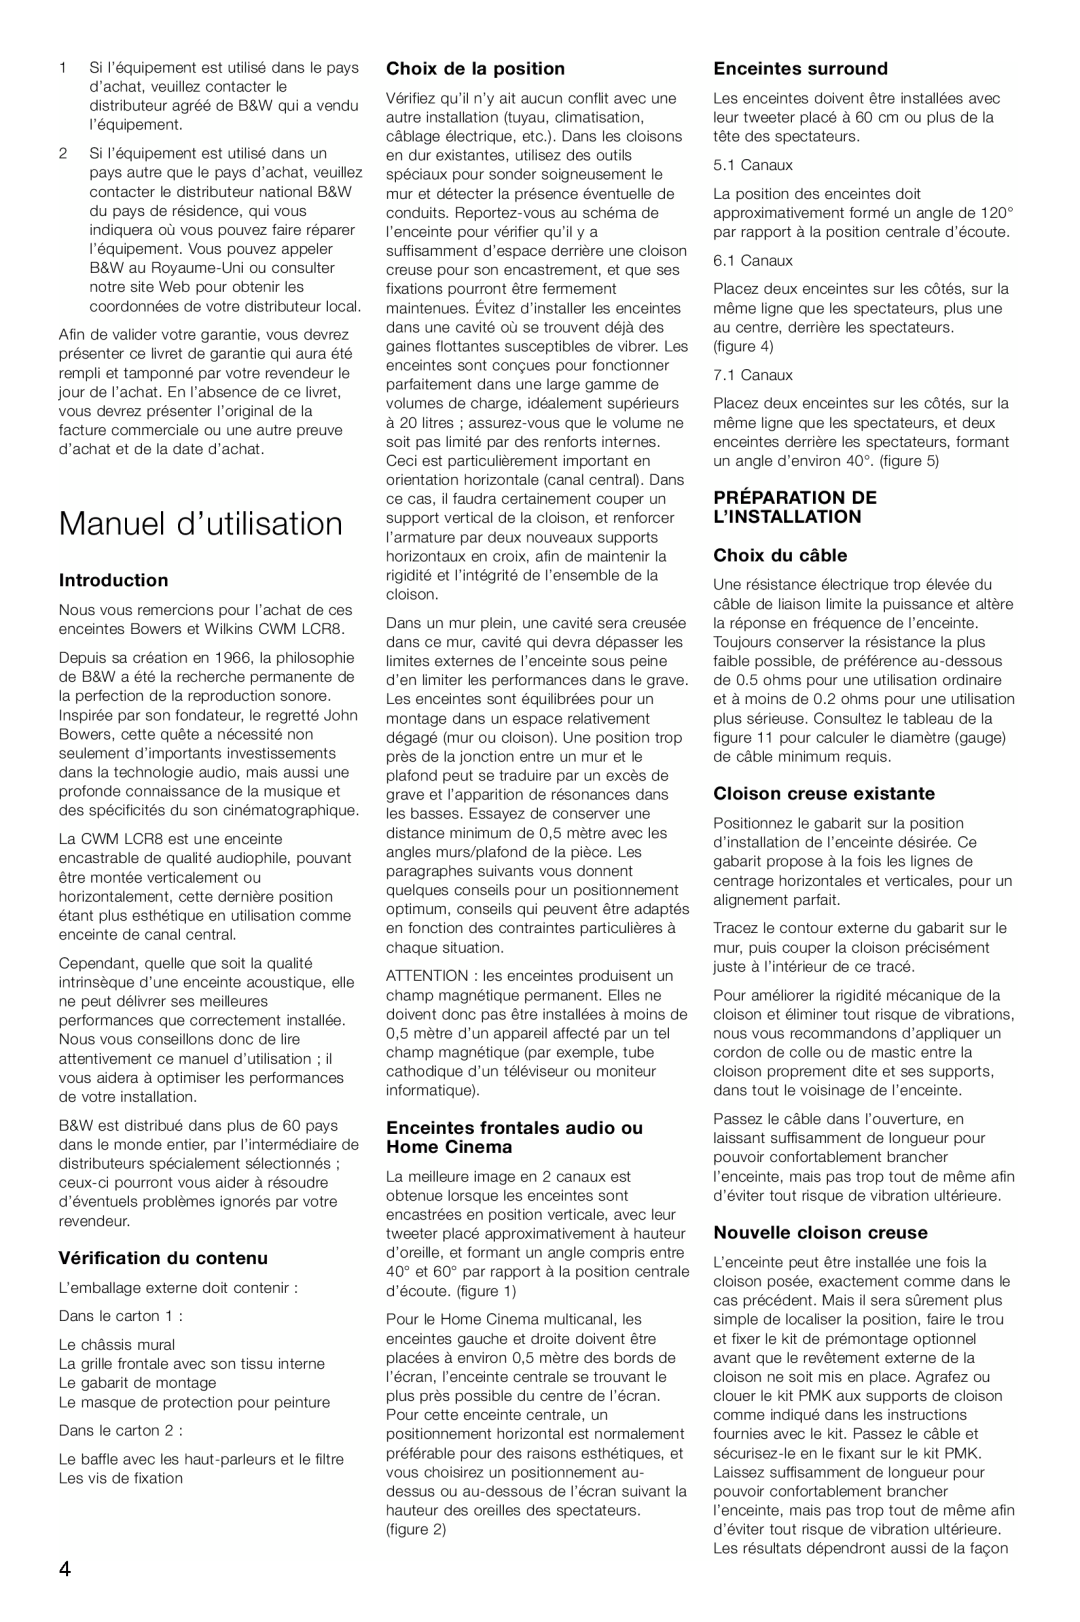 Bowers & Wilkins CWM-LCR8 owner manual Manuel d’utilisation, Introduction, Vérification du contenu, Choix de la position 